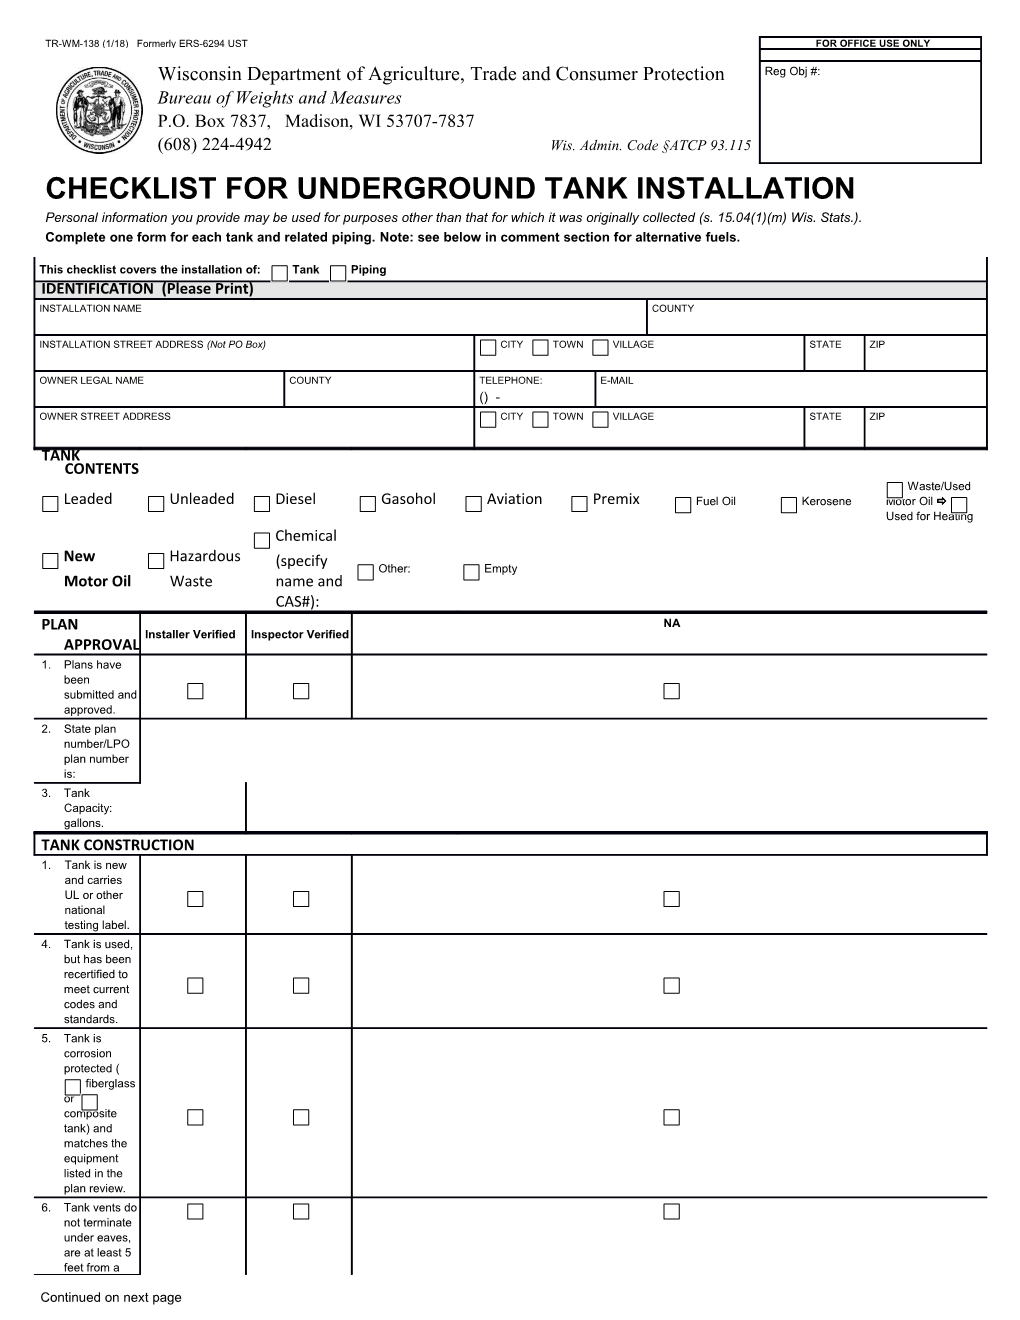 Checklist for Underground Tank Installation